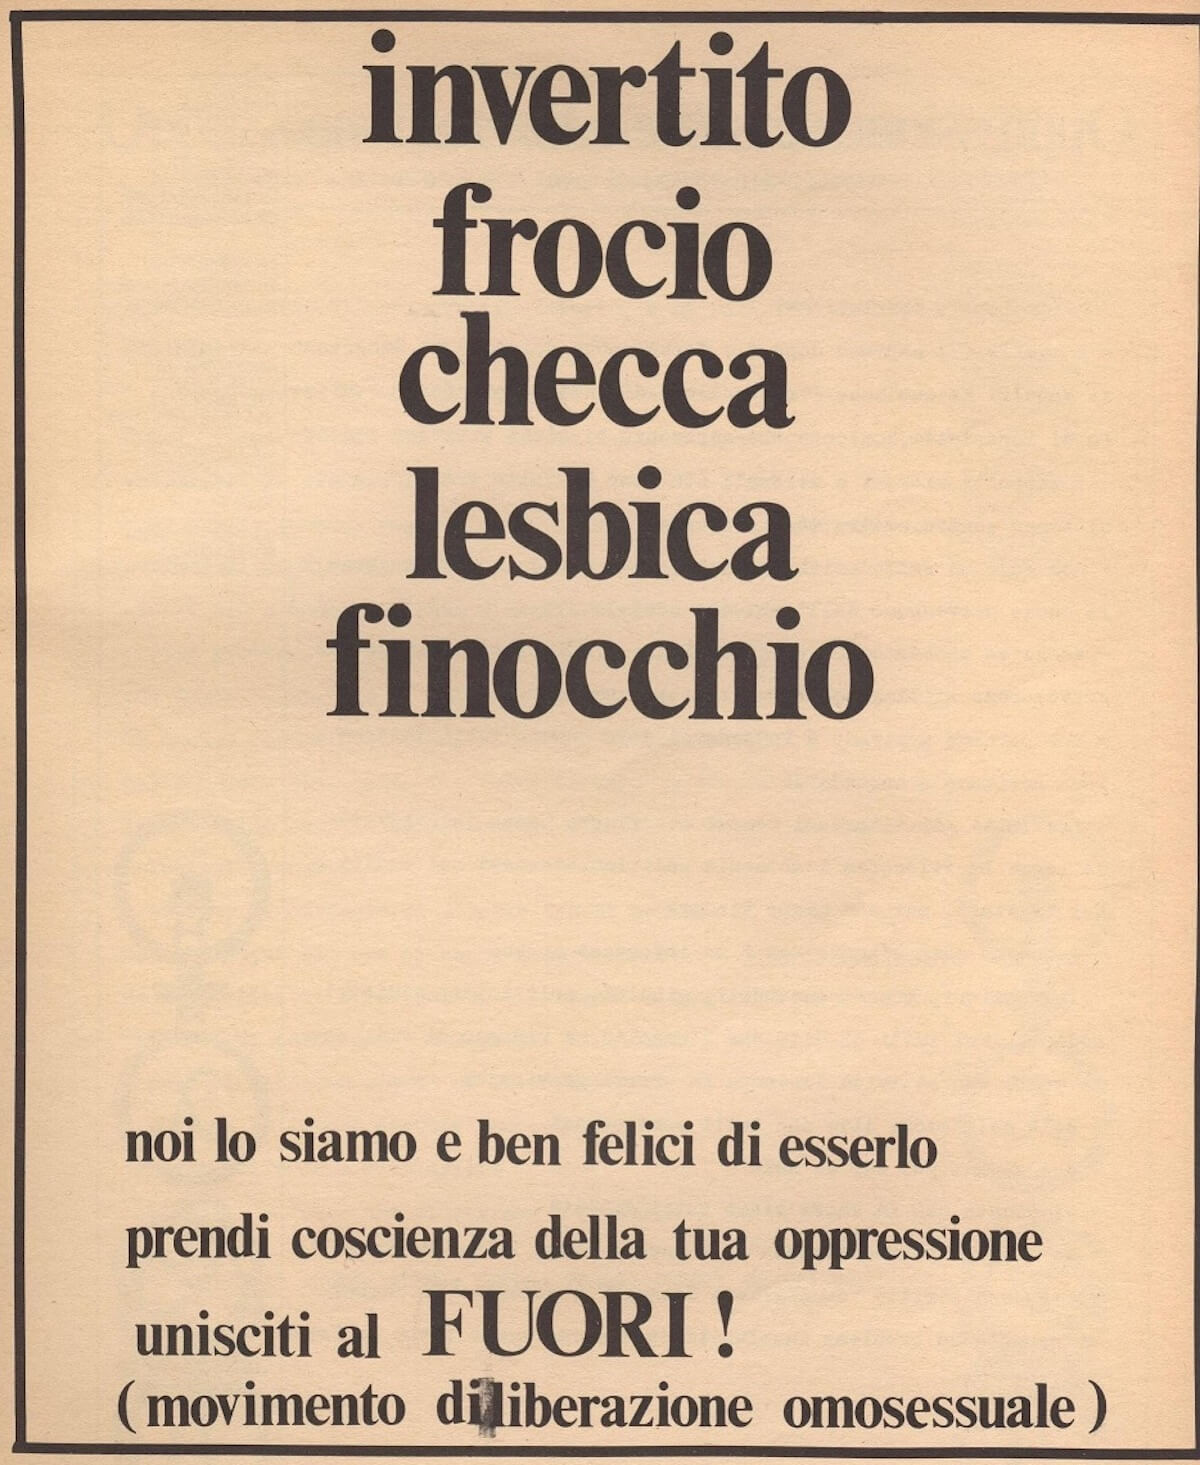 Fialette puzzolenti, psichiatri, carabinieri, a Sanremo 50 anni fa nasceva la visibilità LGBT in Europa: parla chi c'era - Invertito frocio..dal num 14 di Fuori - Gay.it